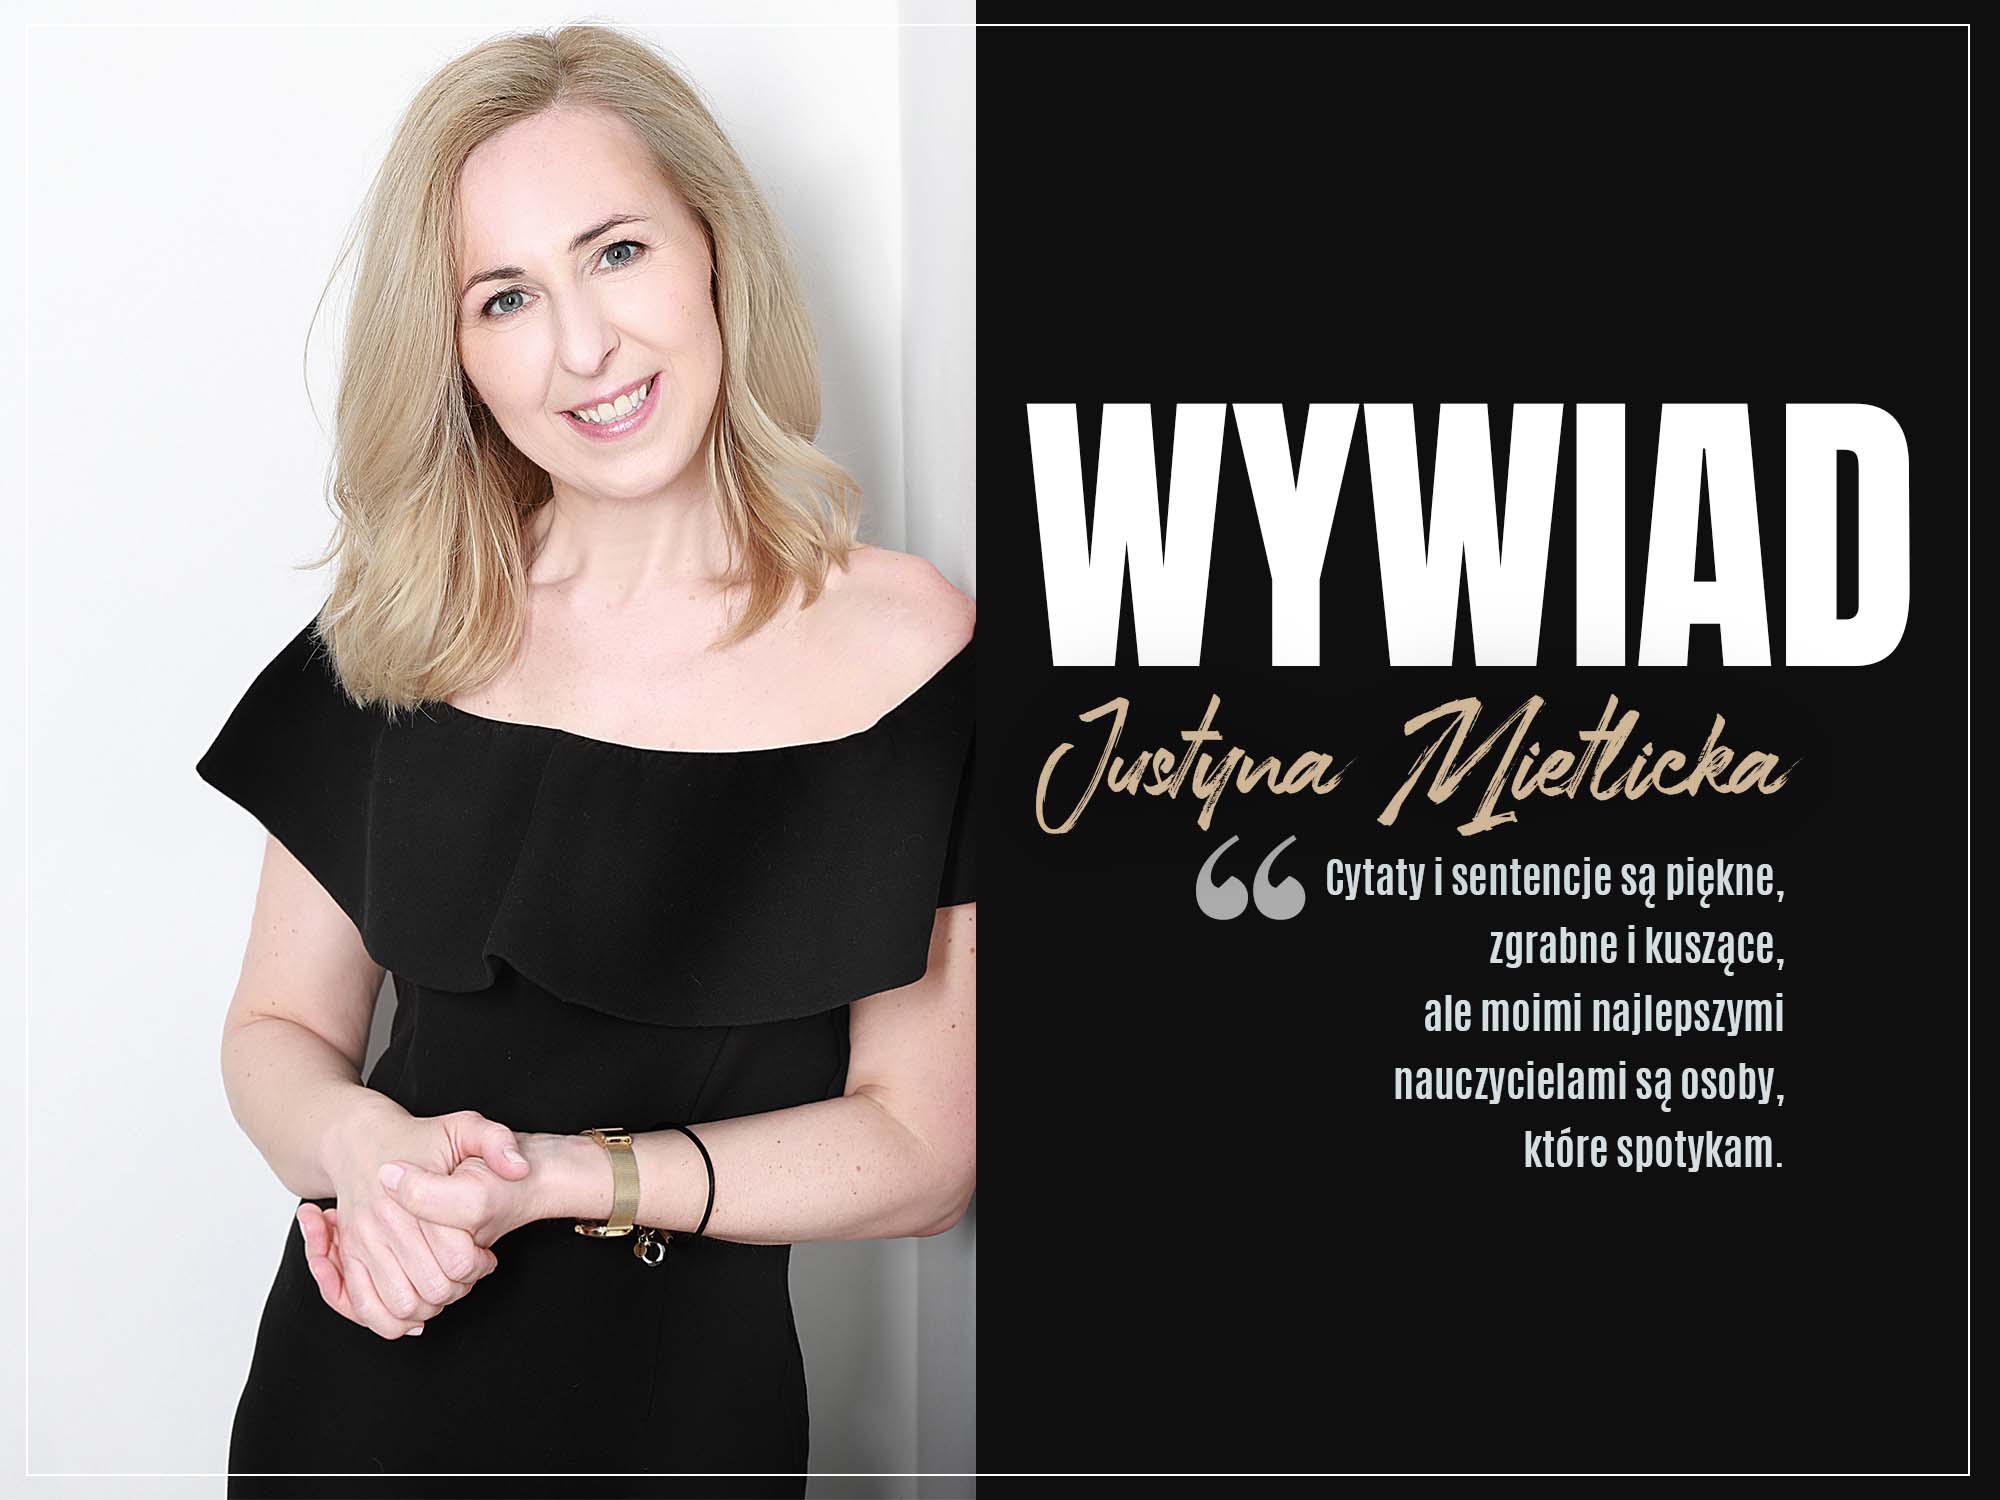 Justyna Mietlicka - WYWIAD